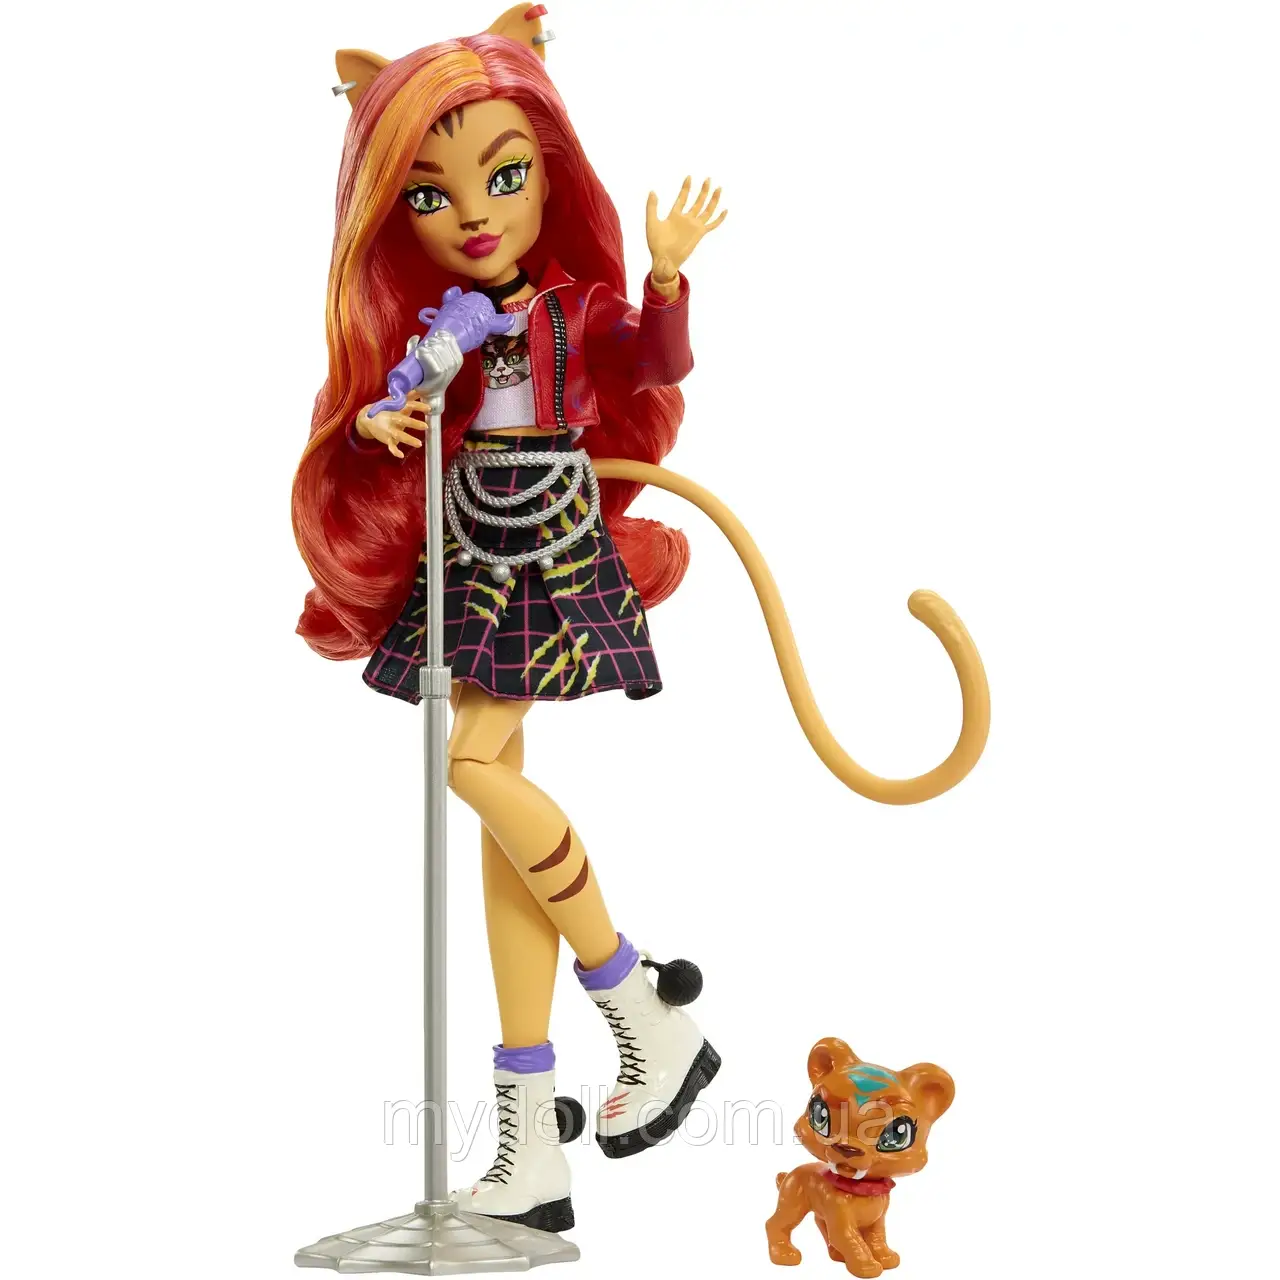 Лялька Монстер Хай Торалей Страйп Monster High Toralei Stripe Doll G3 з вихованцем HHK57 Mattel Оригінал